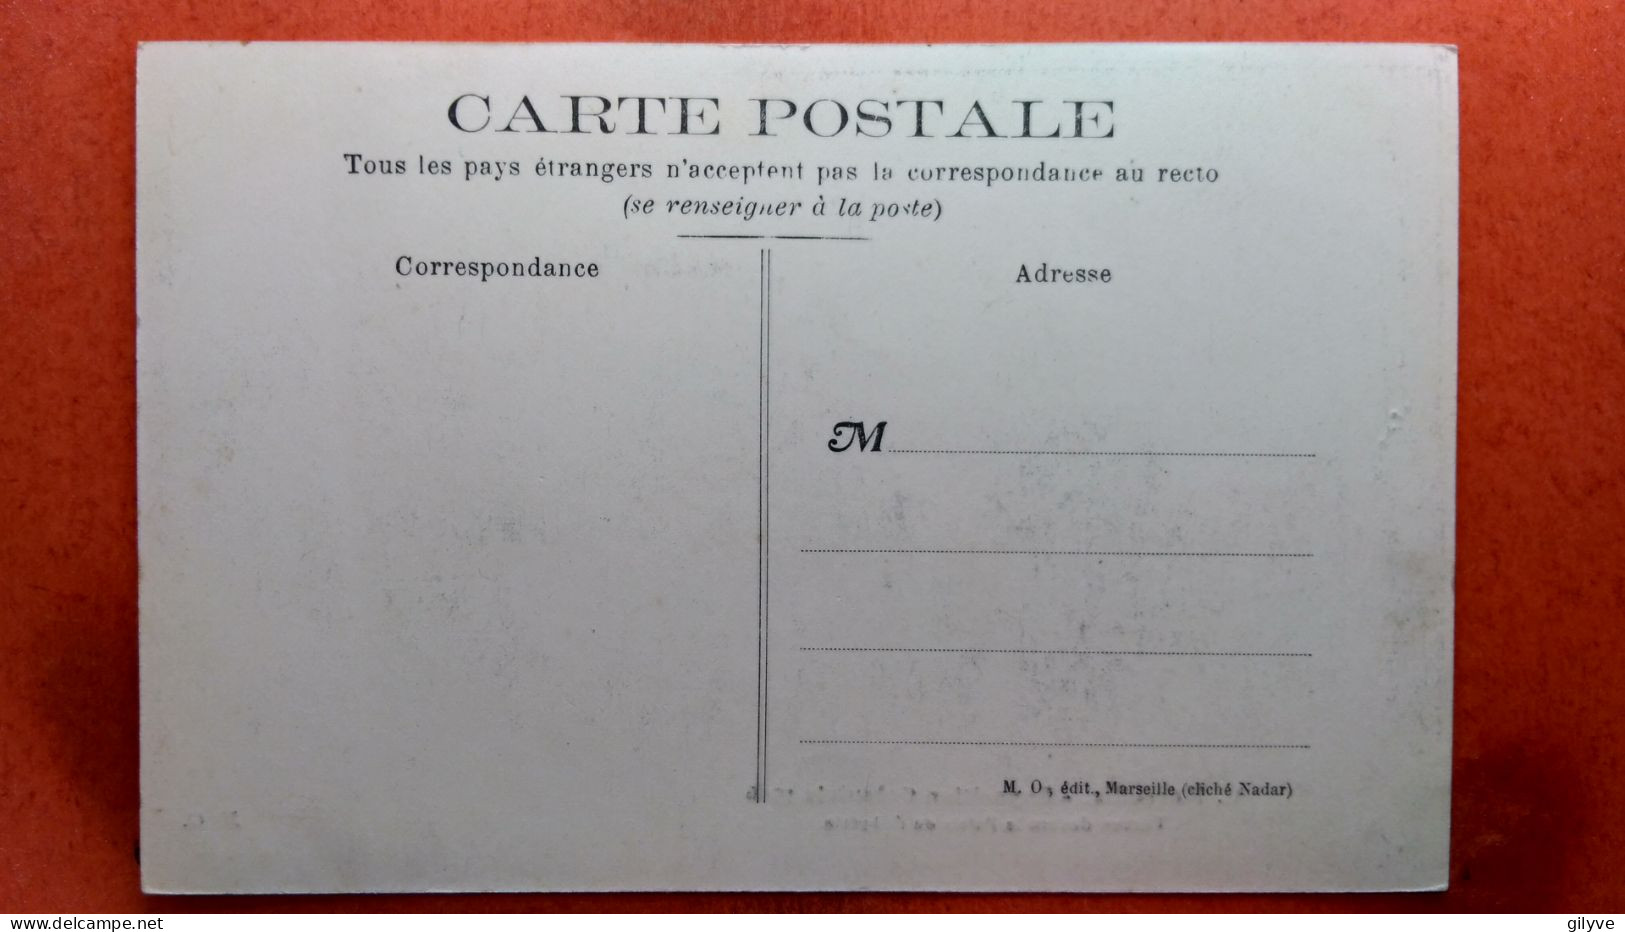 CPA (13) Marseille. Exposition Coloniale.1906. Turcs Devant Le Palais De L'Algérie.  (7A.1216) - Expositions Coloniales 1906 - 1922